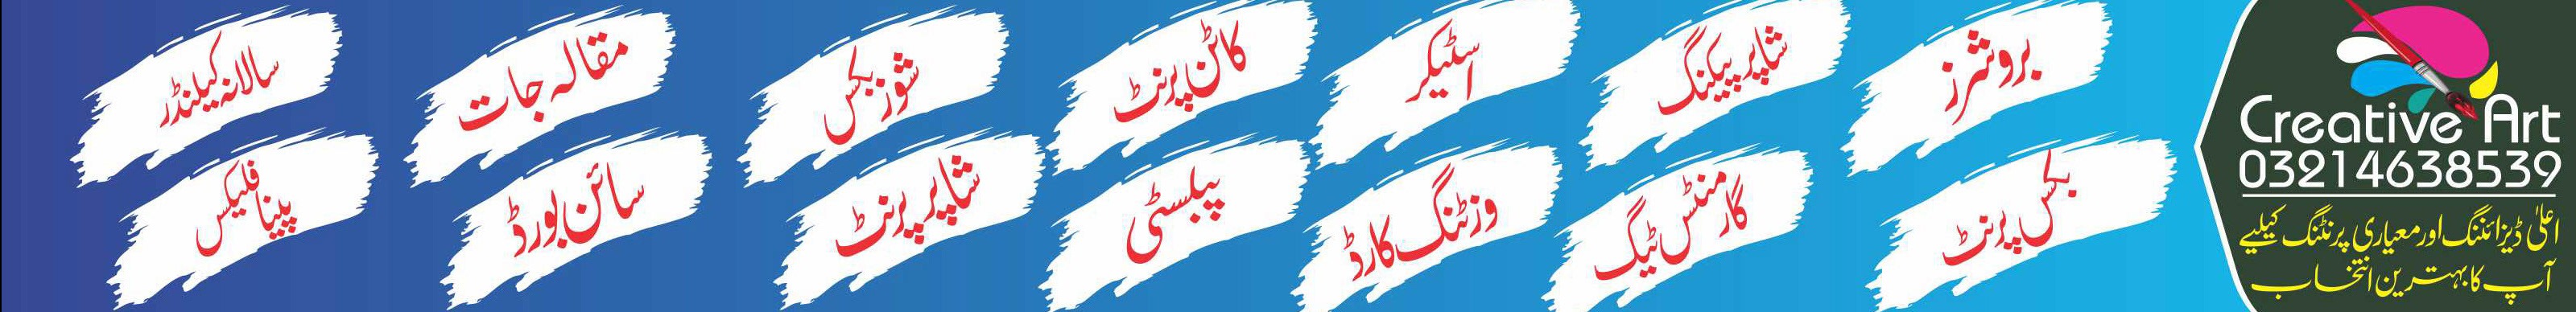 Muhammad shafiq's profile banner